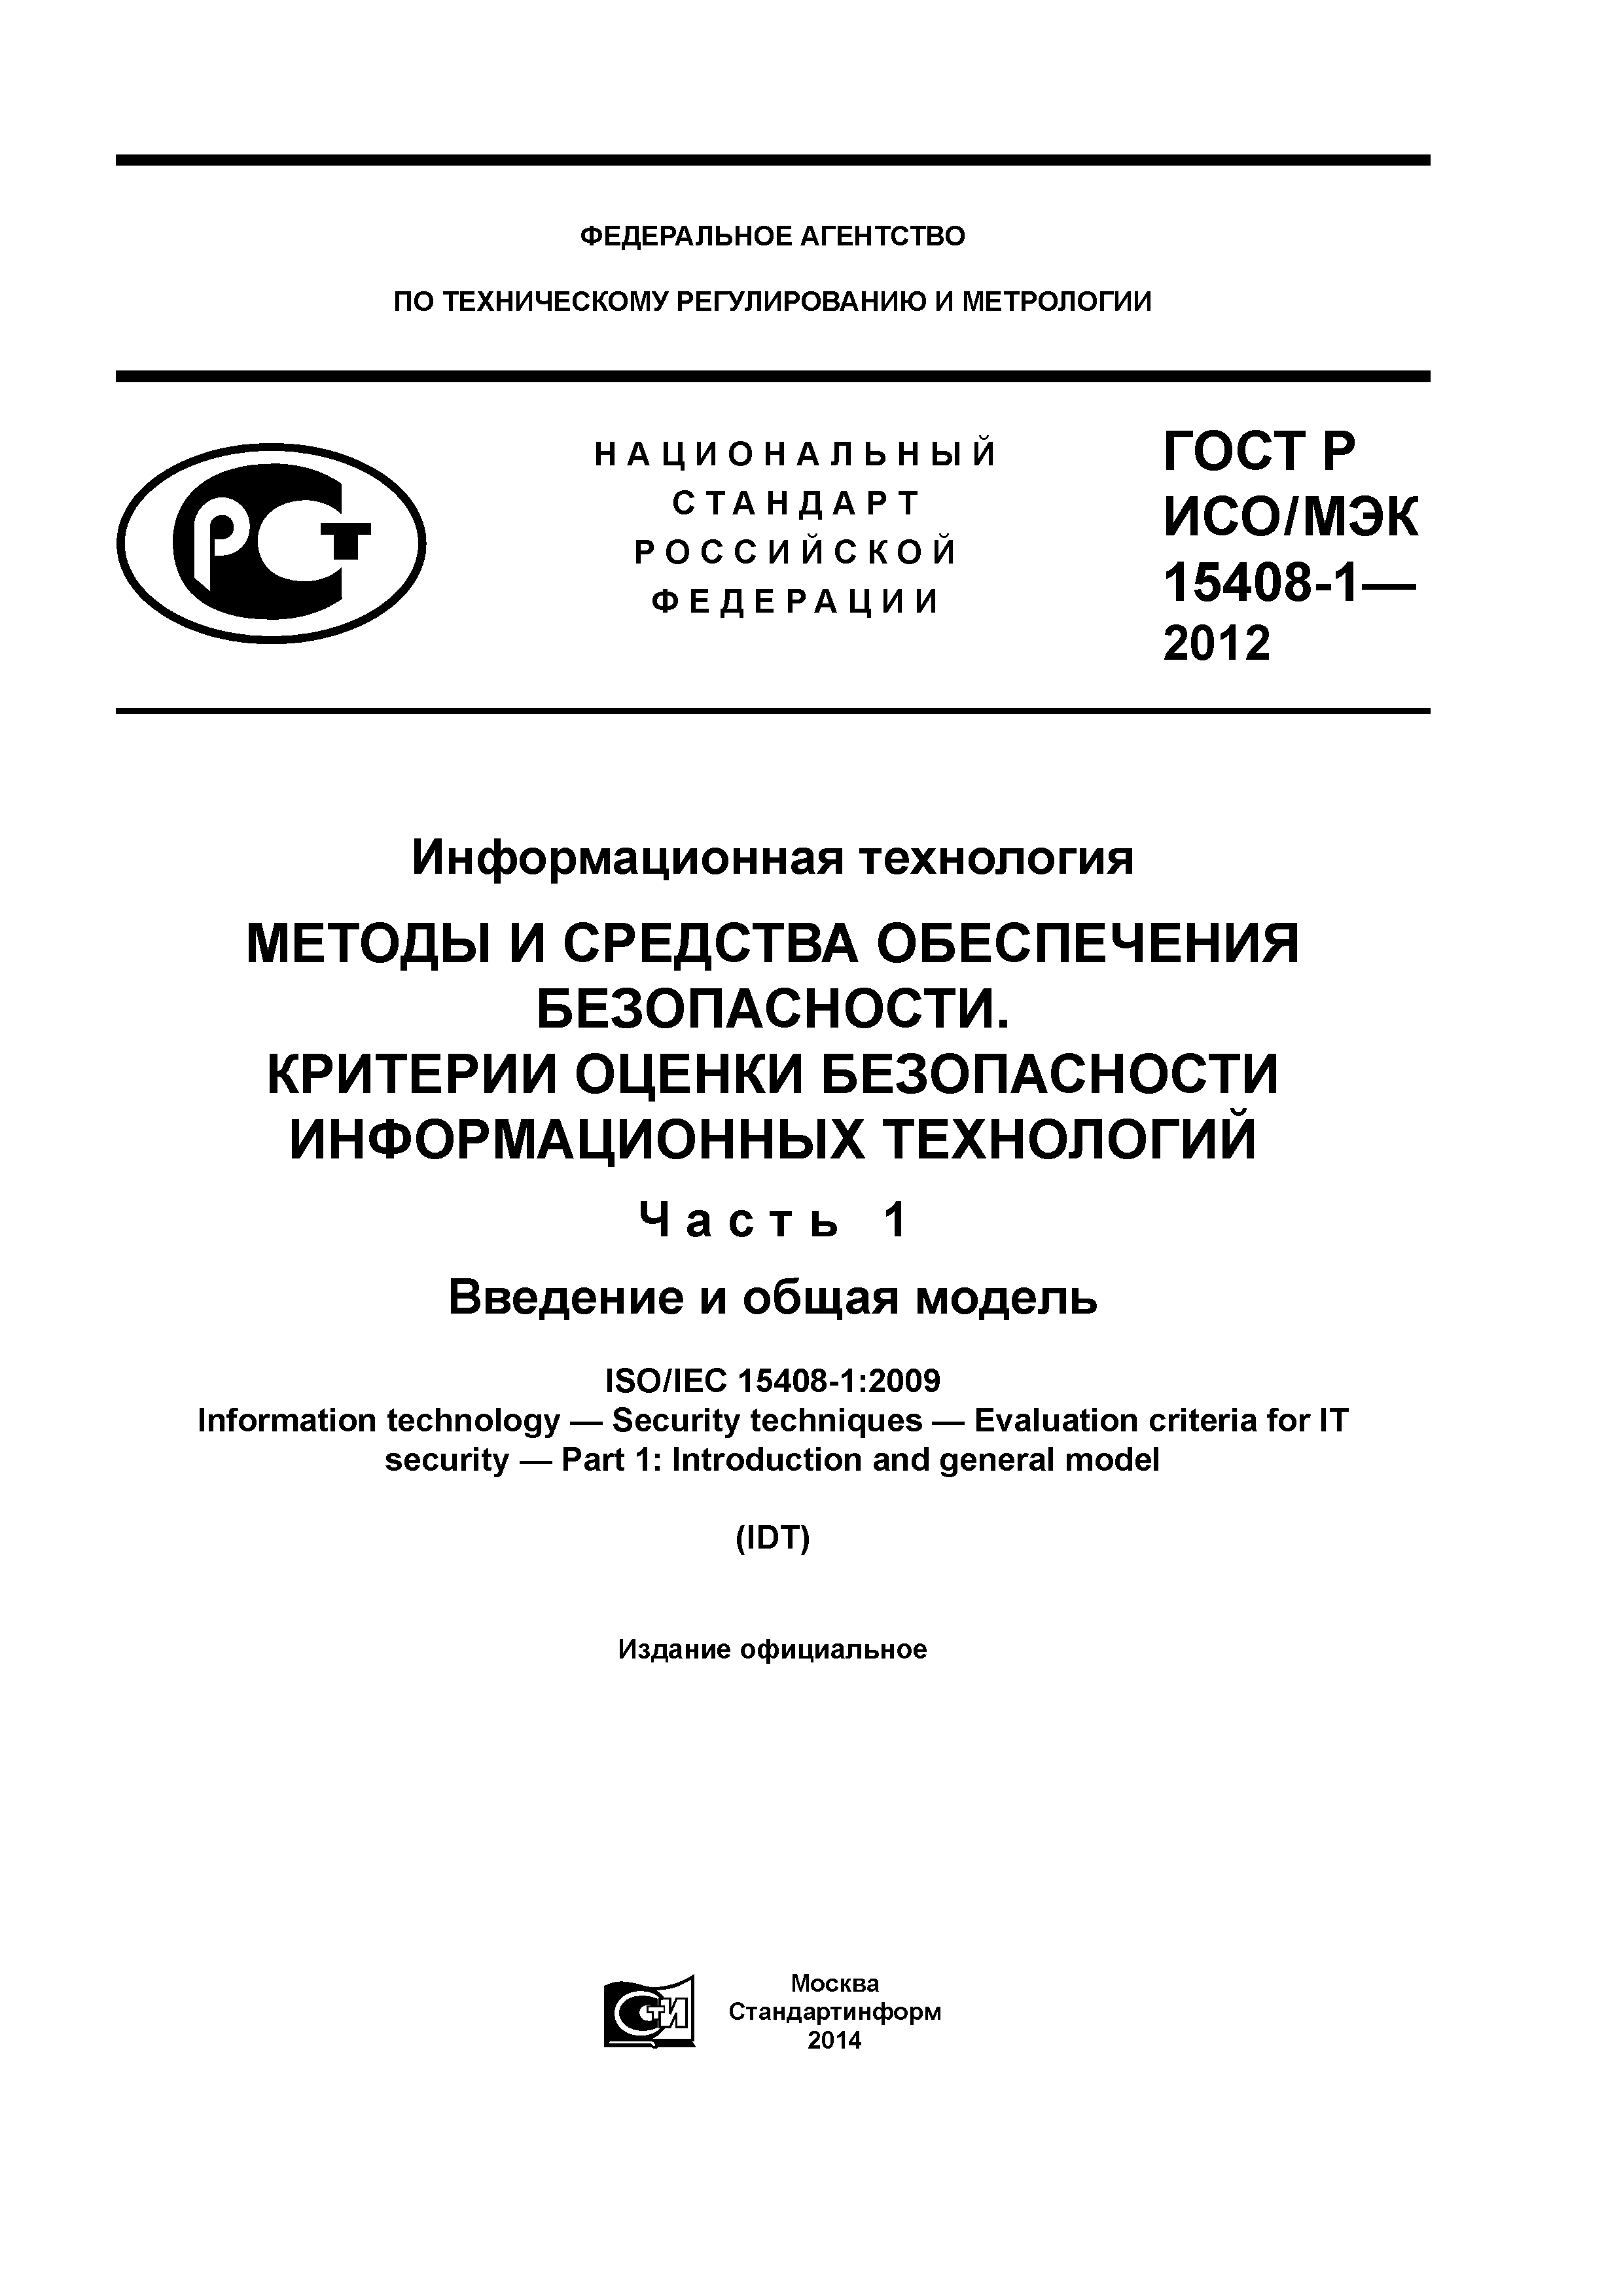 ГОСТ Р ИСО/МЭК 15408-1-2012